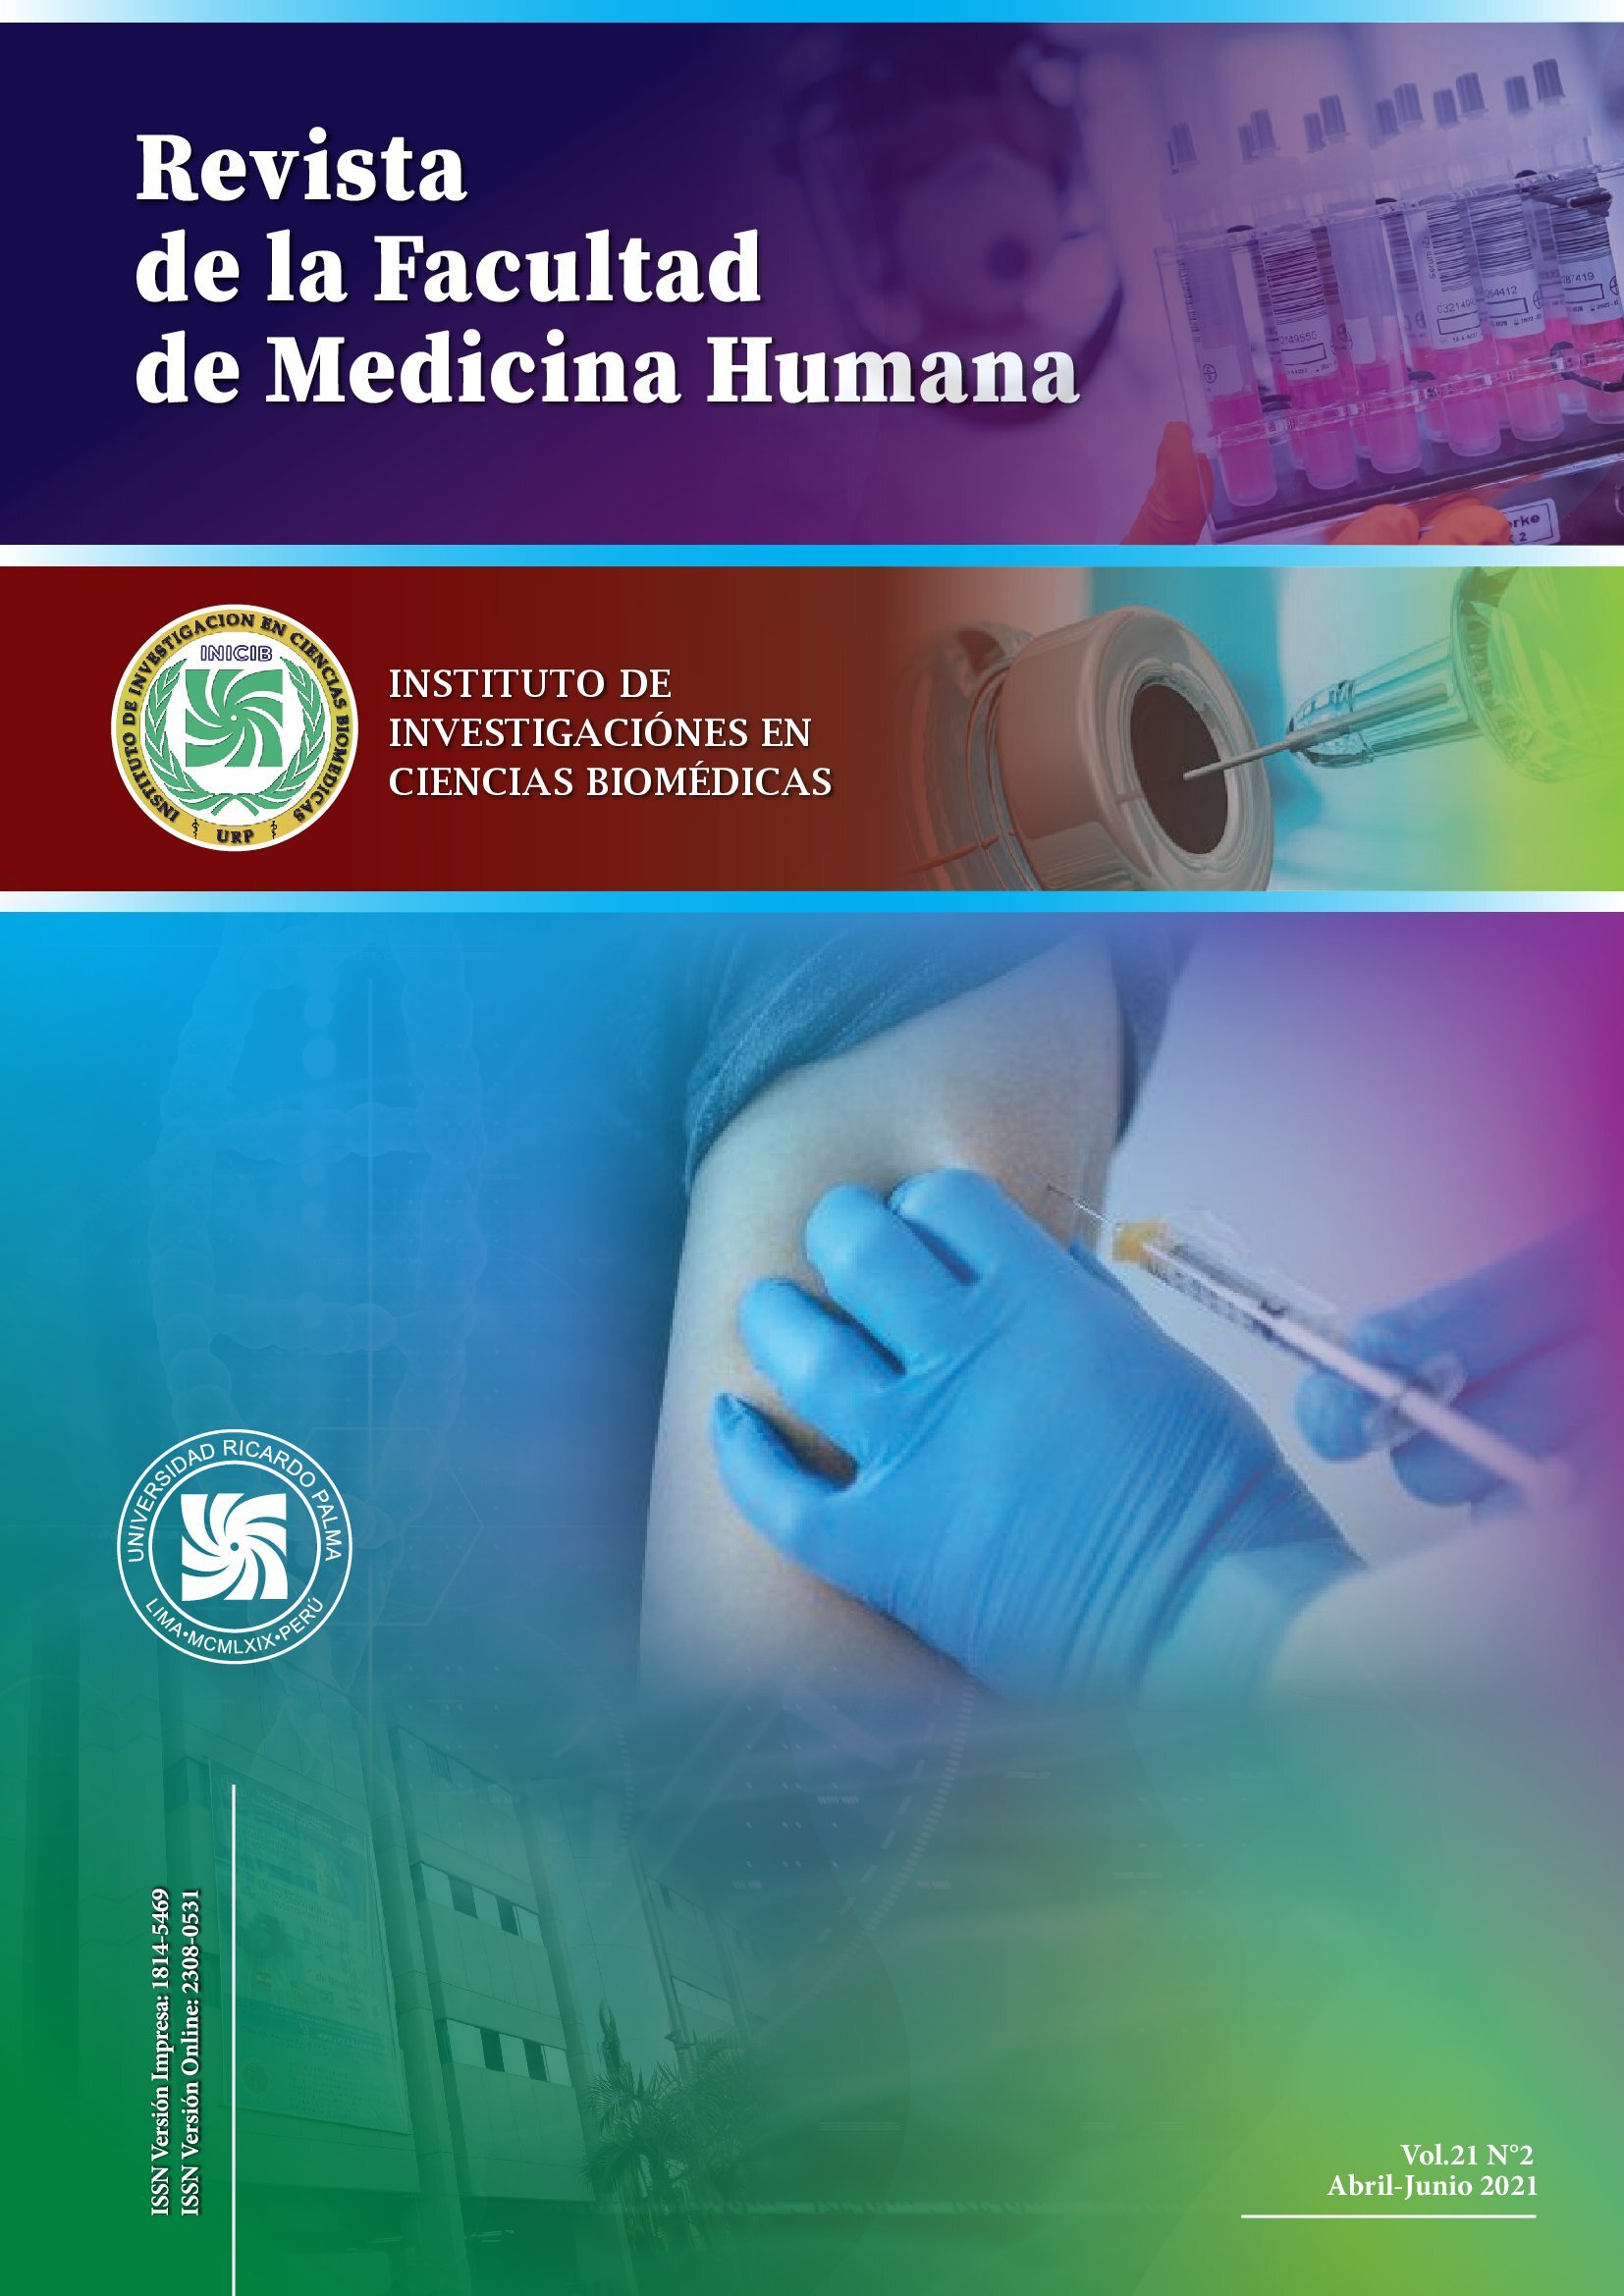 					View Vol. 21 No. 2 (2021): Revista de la Facultad de Medicina Humana
				